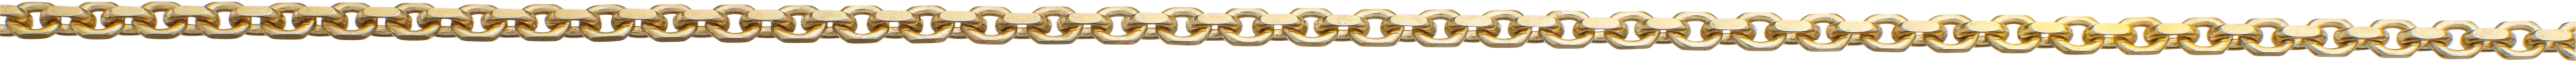 ankerketting gediamanteerd goud 585/-gg 1,60mm, draad dikte 0,50mm